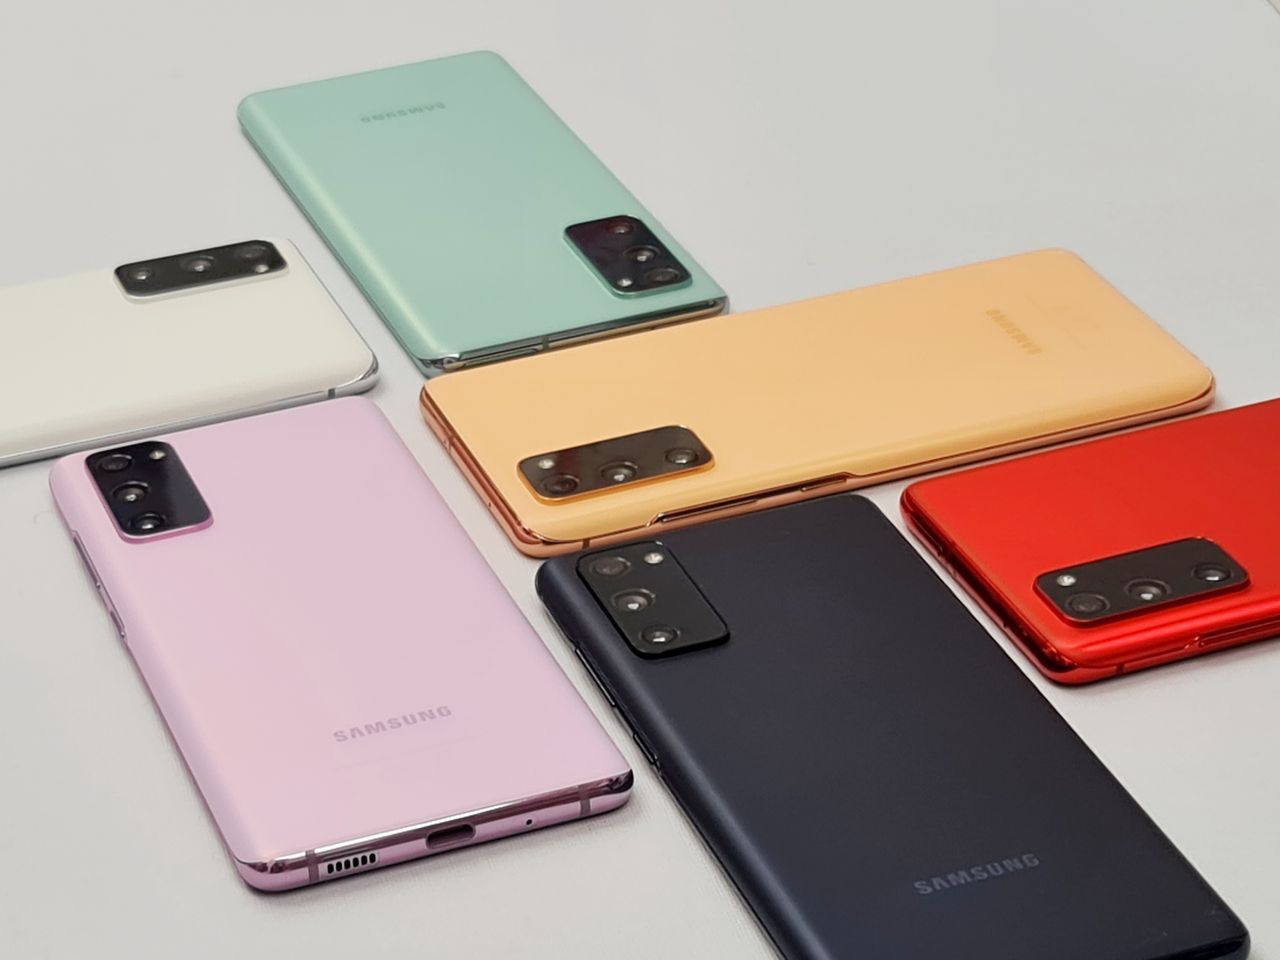 Samsung Galaxy S20 FE to murowany hit. Pierwsze wrażenia i zdjęcia z aparatu